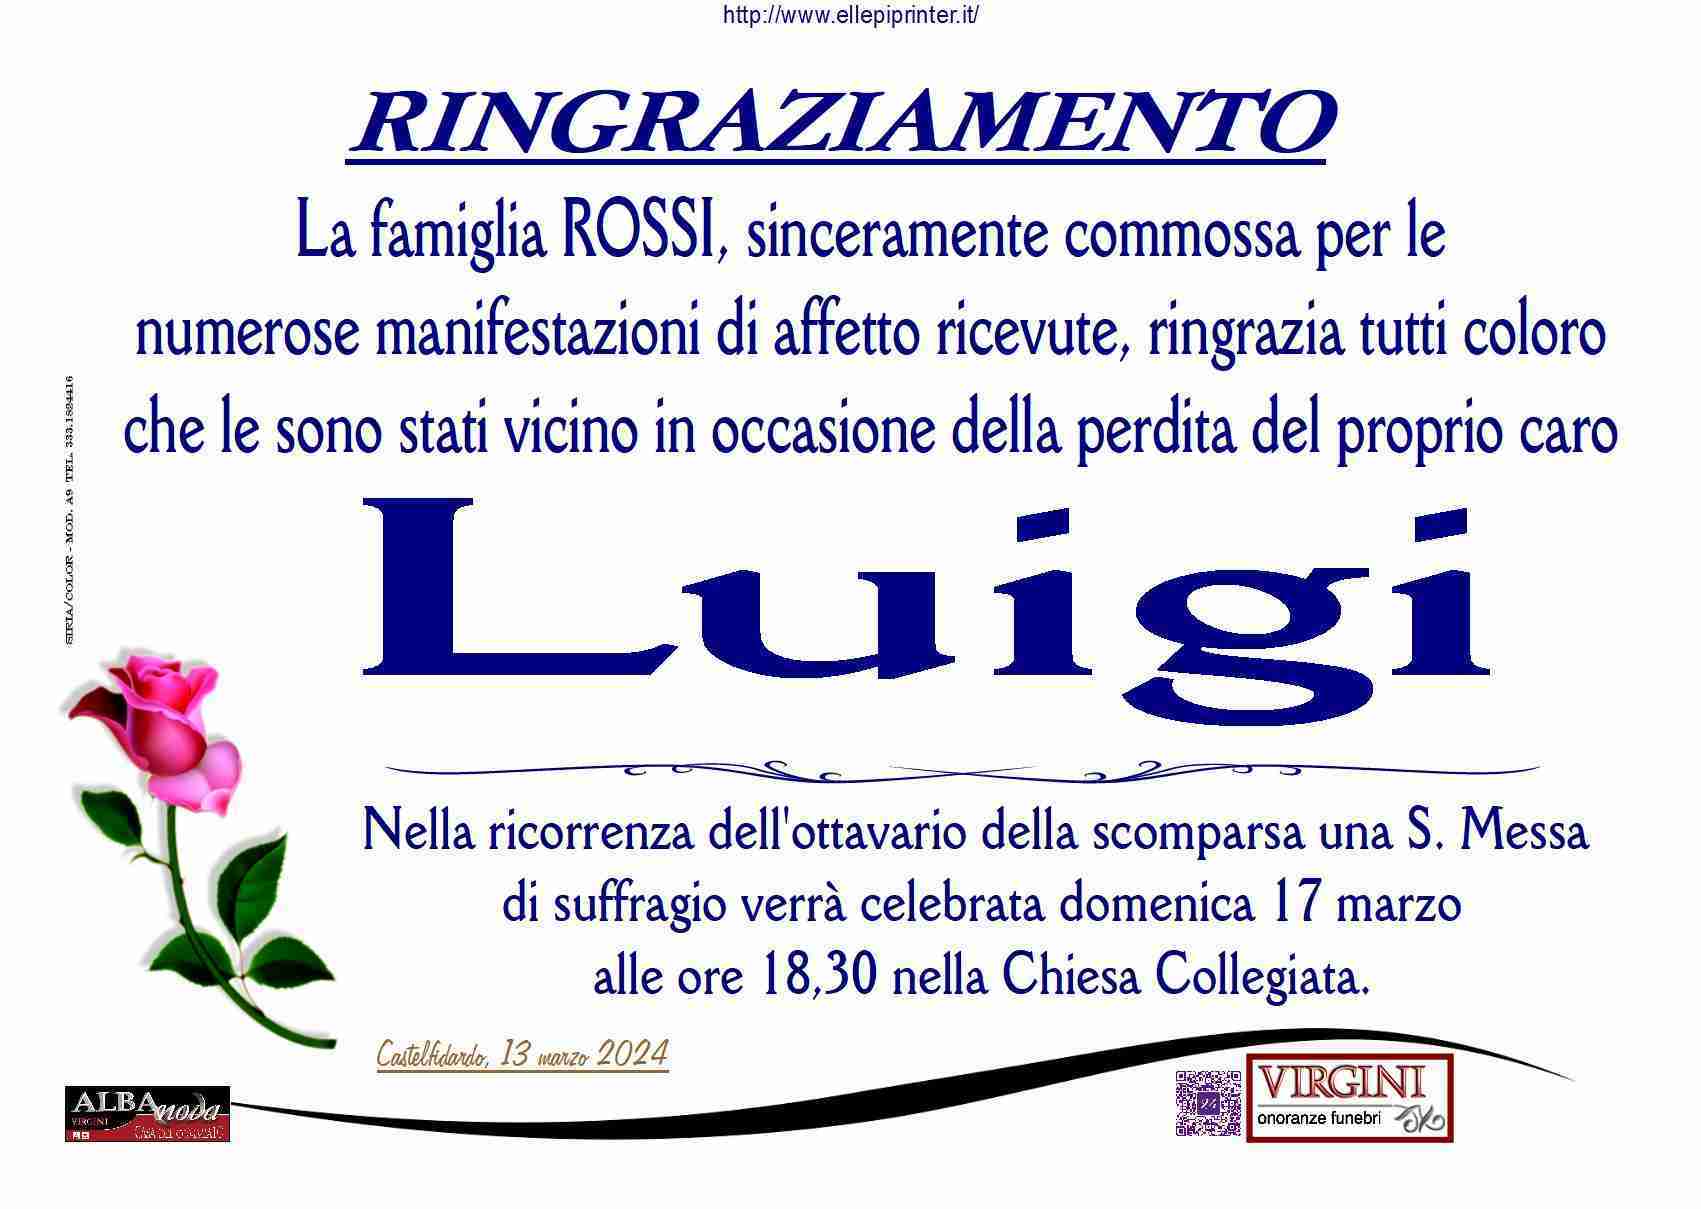 Luigi Rossi